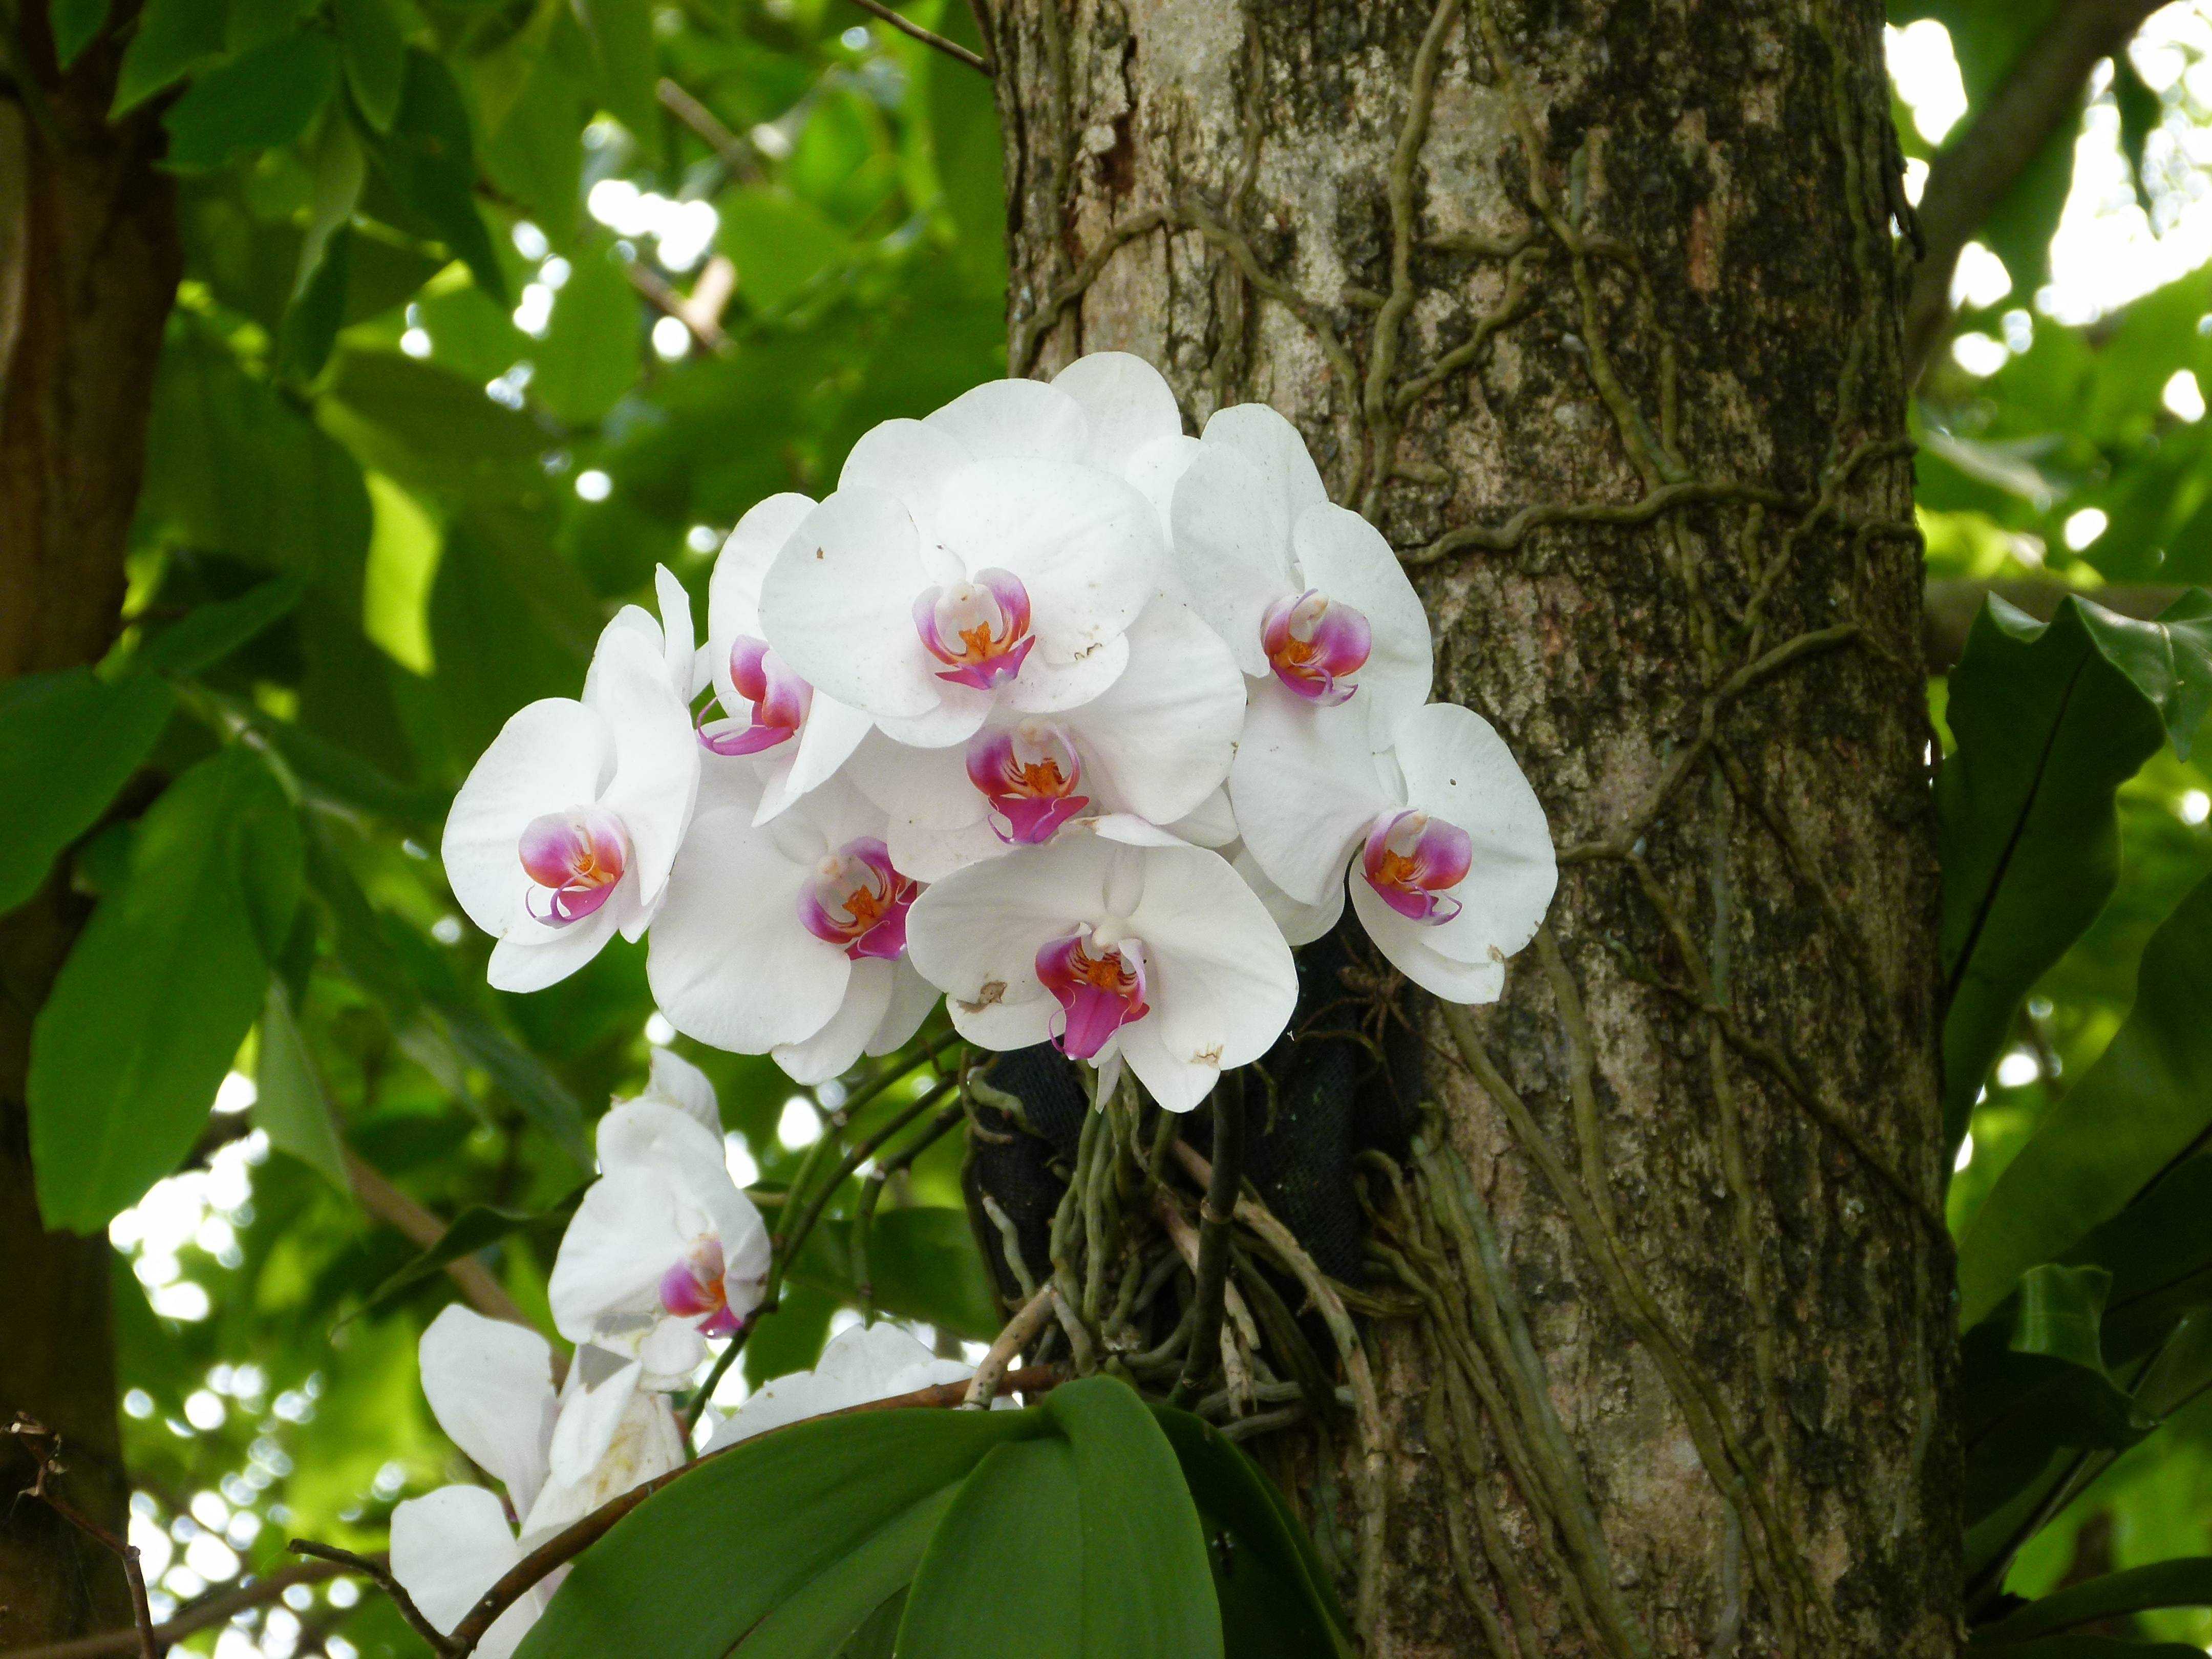 Особенности роста и развития орхидеи в природе, в каких регионах произрастают разные разновидности